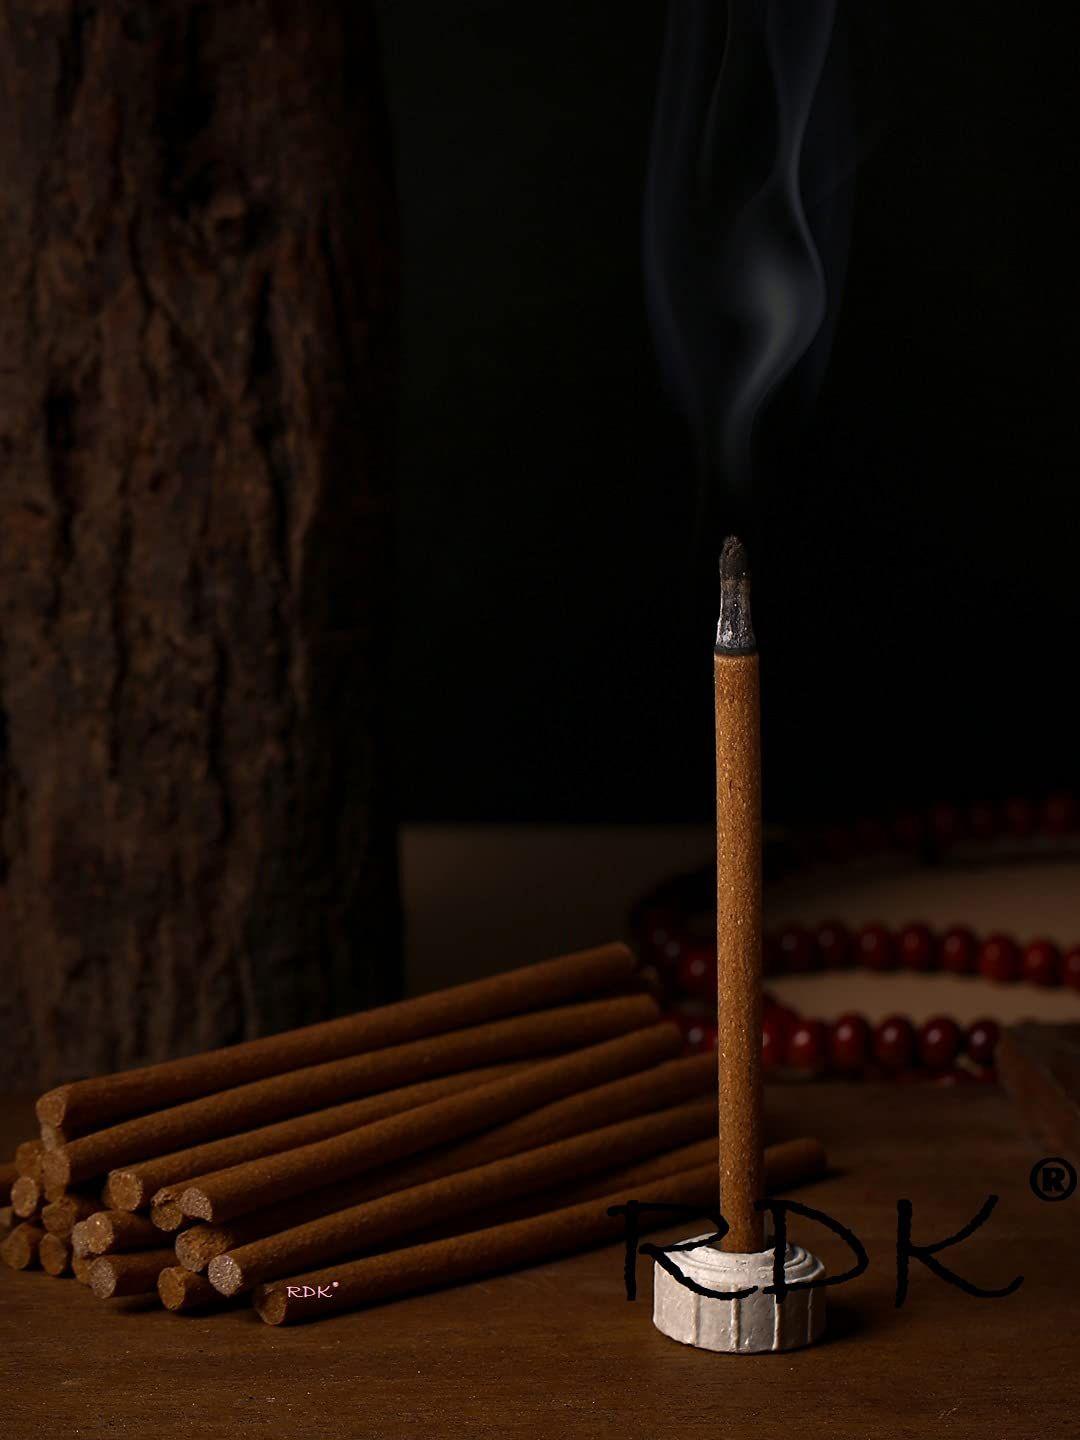 rdk set of 200 gms beige colored natural kasturi fragrance incense sticks